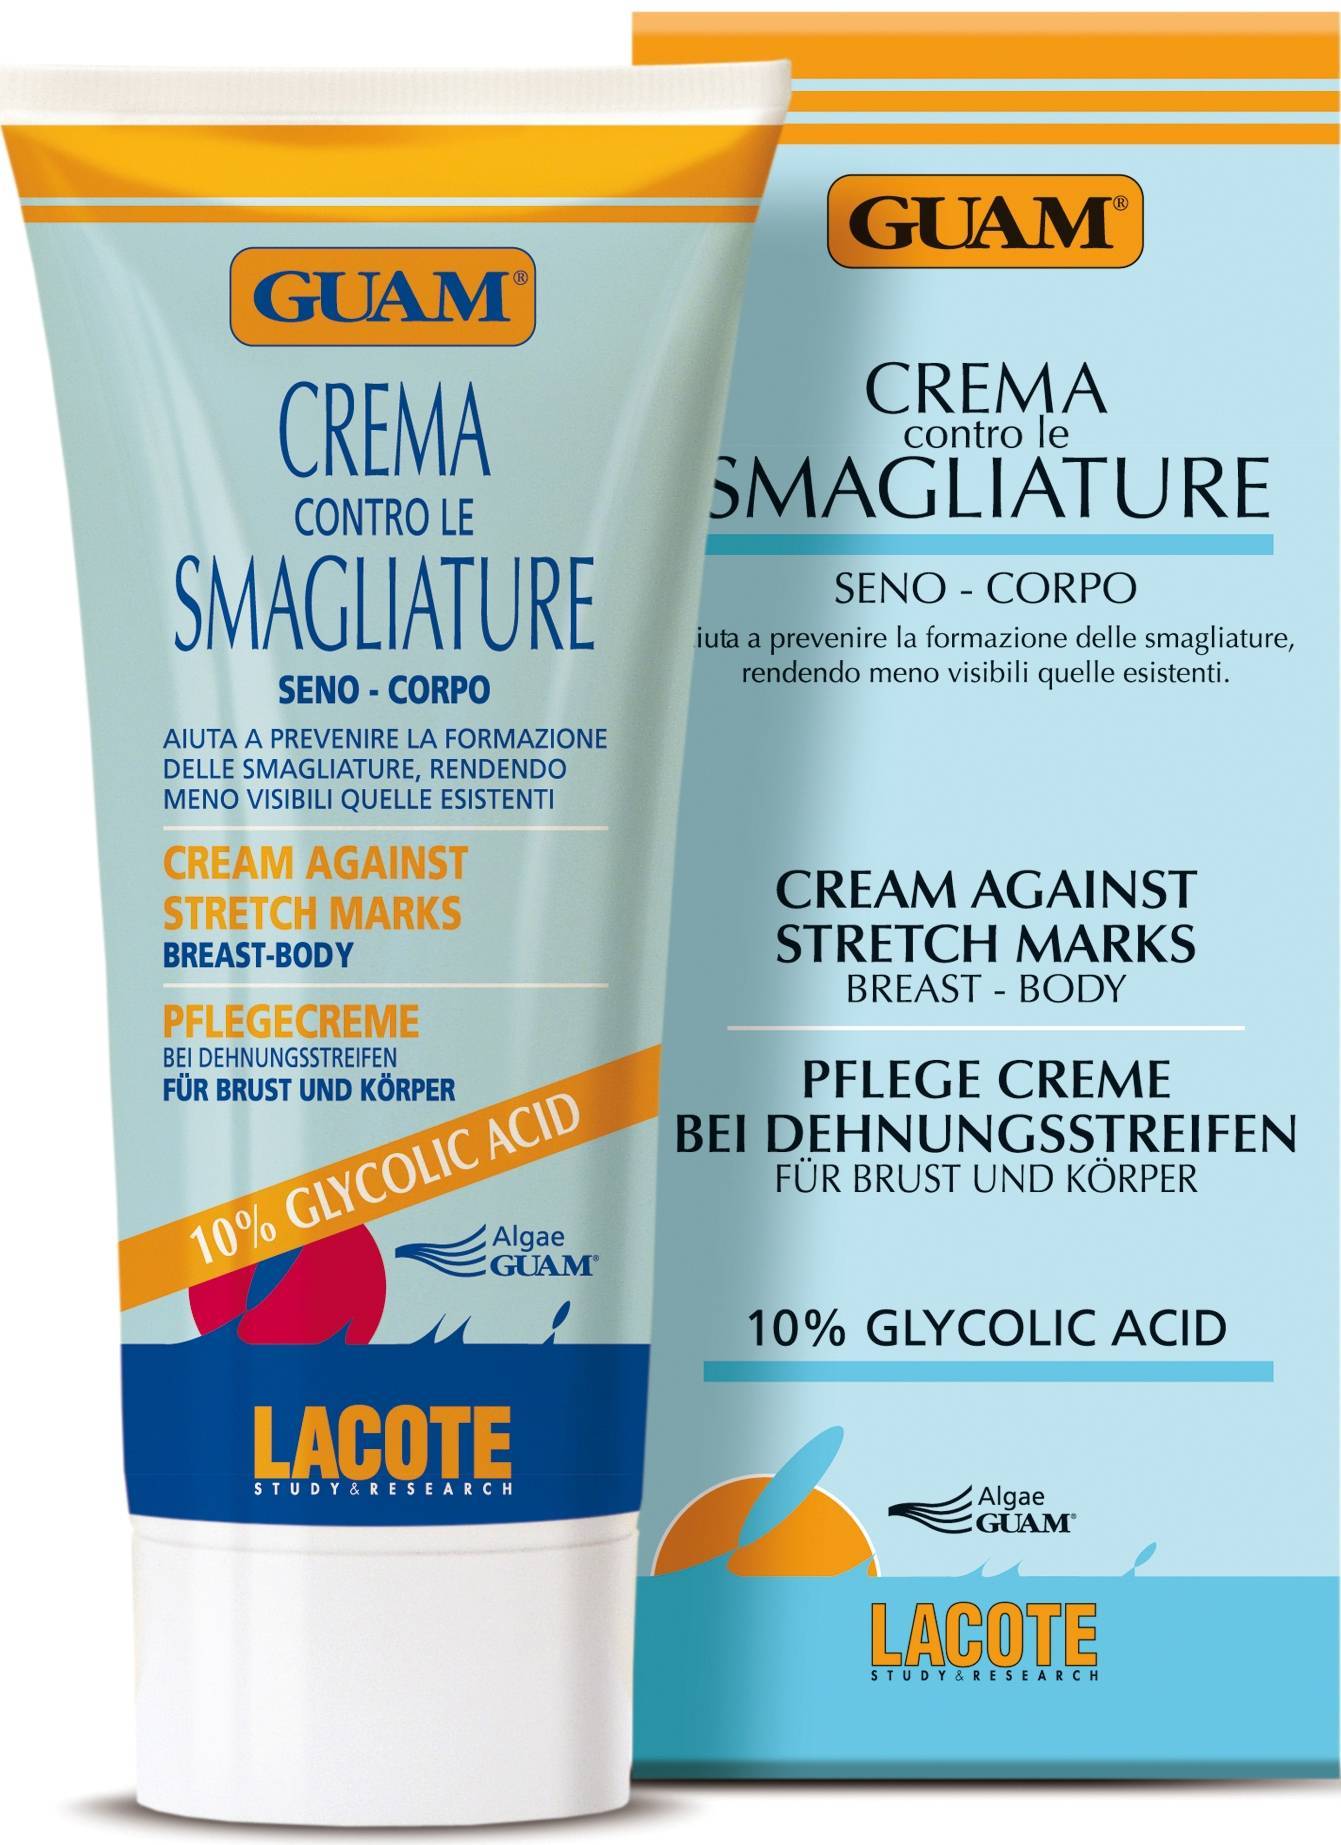 Серия кремов guam с гликолевой кислотой против растяжек: состав, принцип действия, применение при беременности